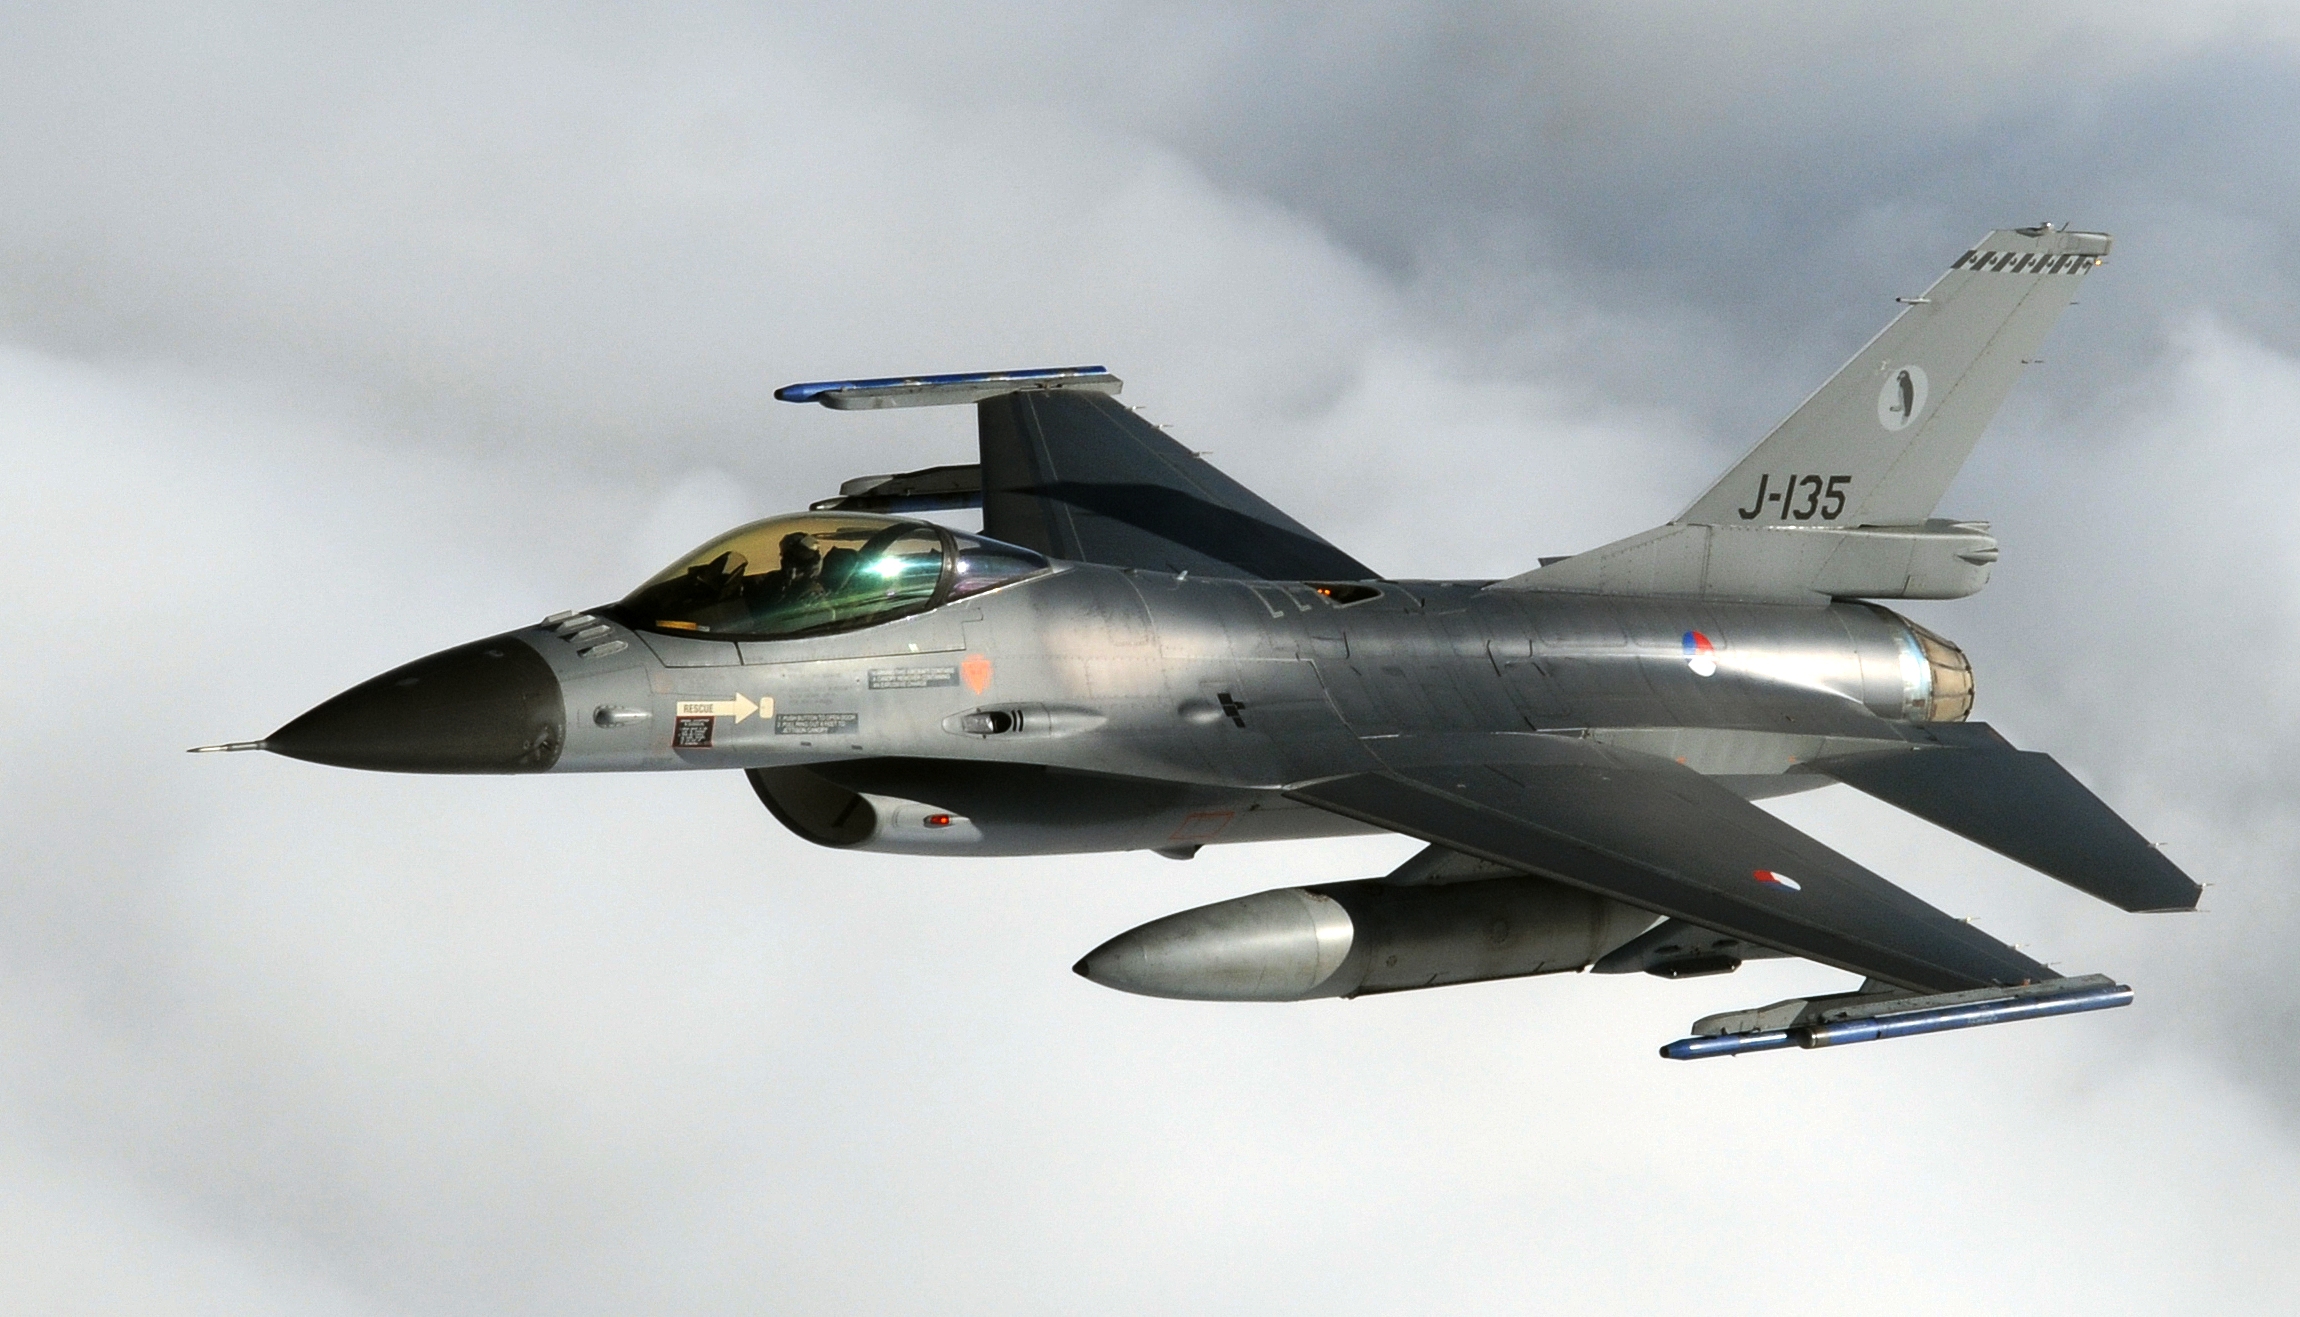 Chiến đấu cơ F-16 của Hà Lan đã thực hiện 10 nhiệm vụ tấn công khủng bố IS tại Iraq và Syria